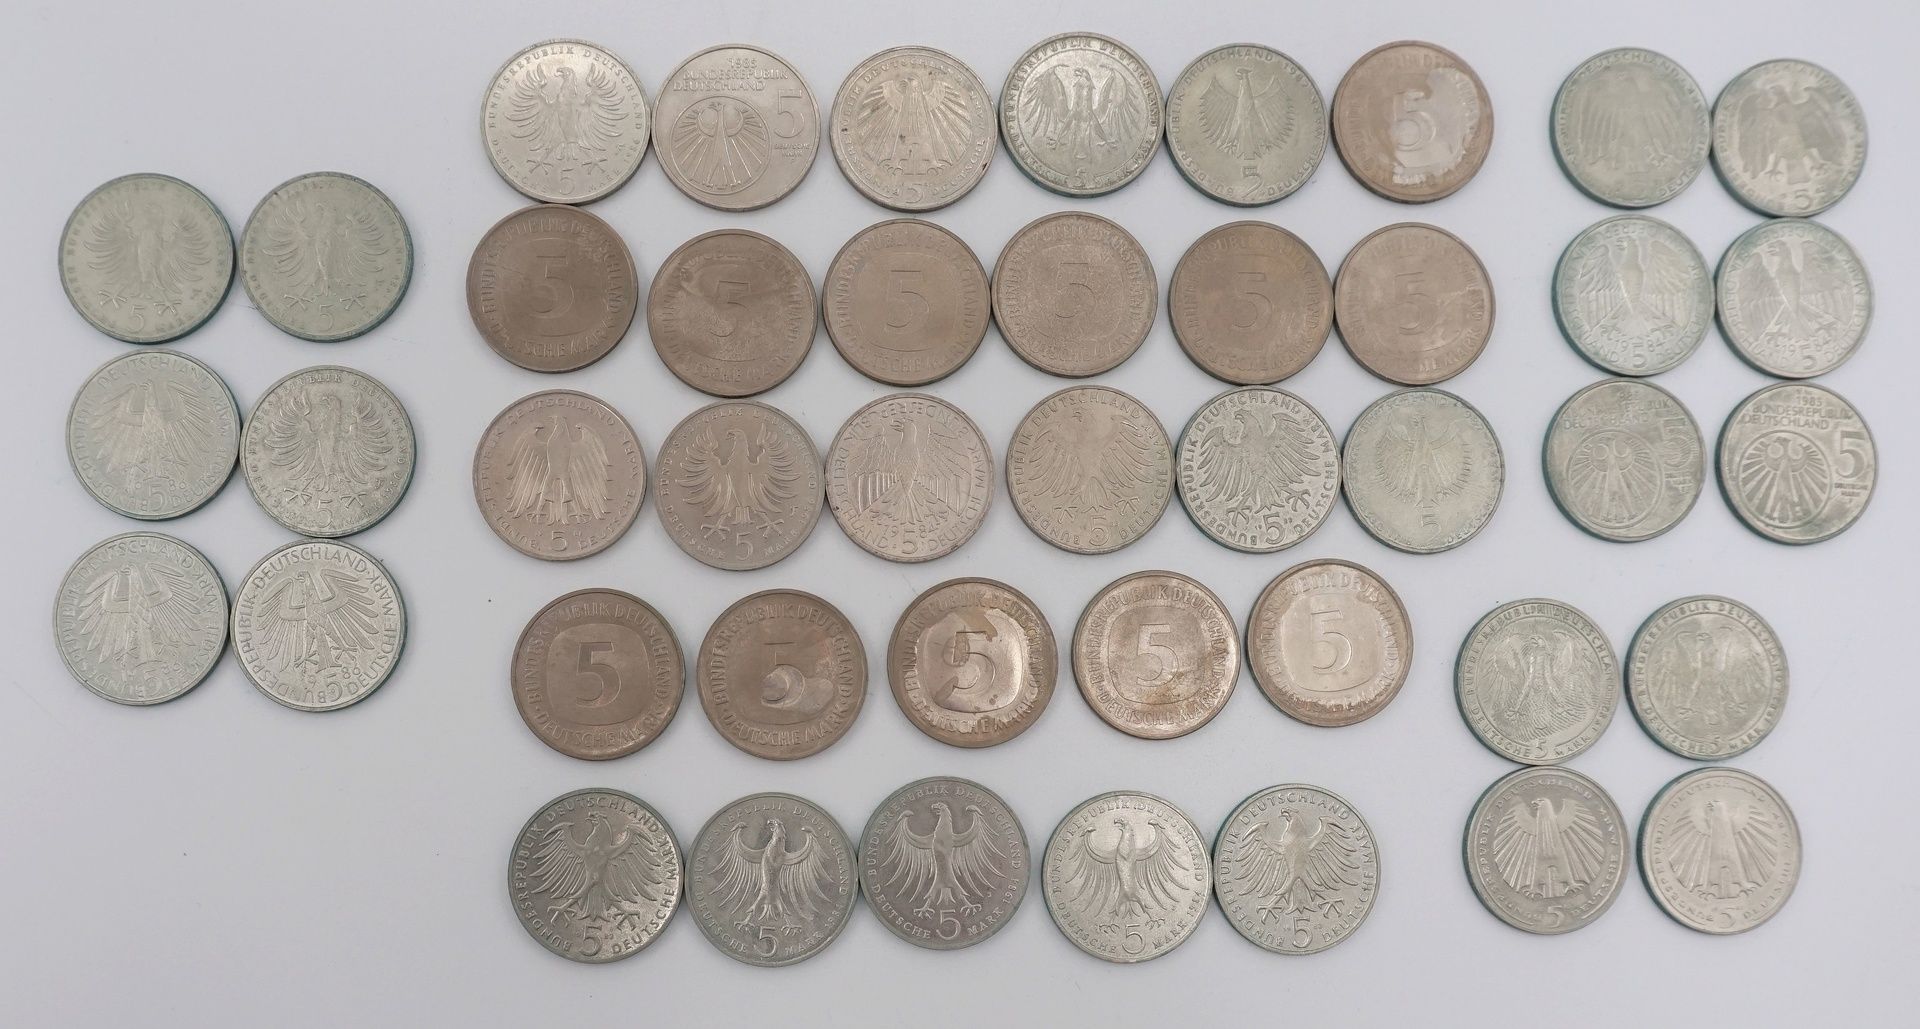 44 Münzen, 5 DM BRDKupfer / Nickel, verschiedene Ausgaben, Erhaltungszustand sehr schön bis - Image 2 of 2